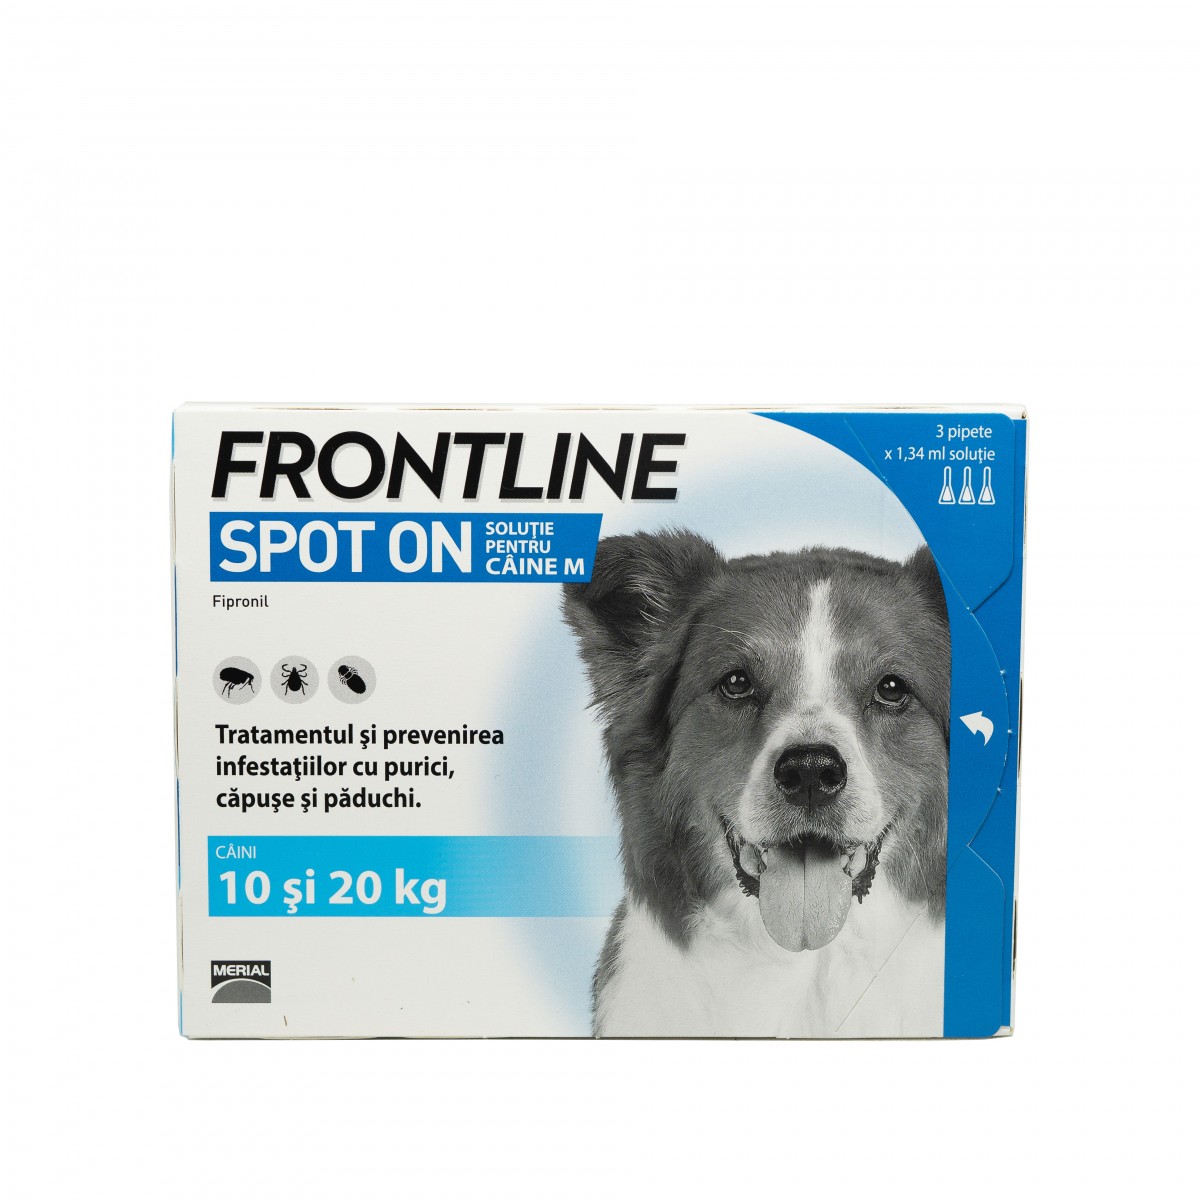 Frontline pentru caini de talie medie 10-20kg, 3 pipete antiparazitare, Antiparazitare externe, Antiparazitare, Câini 